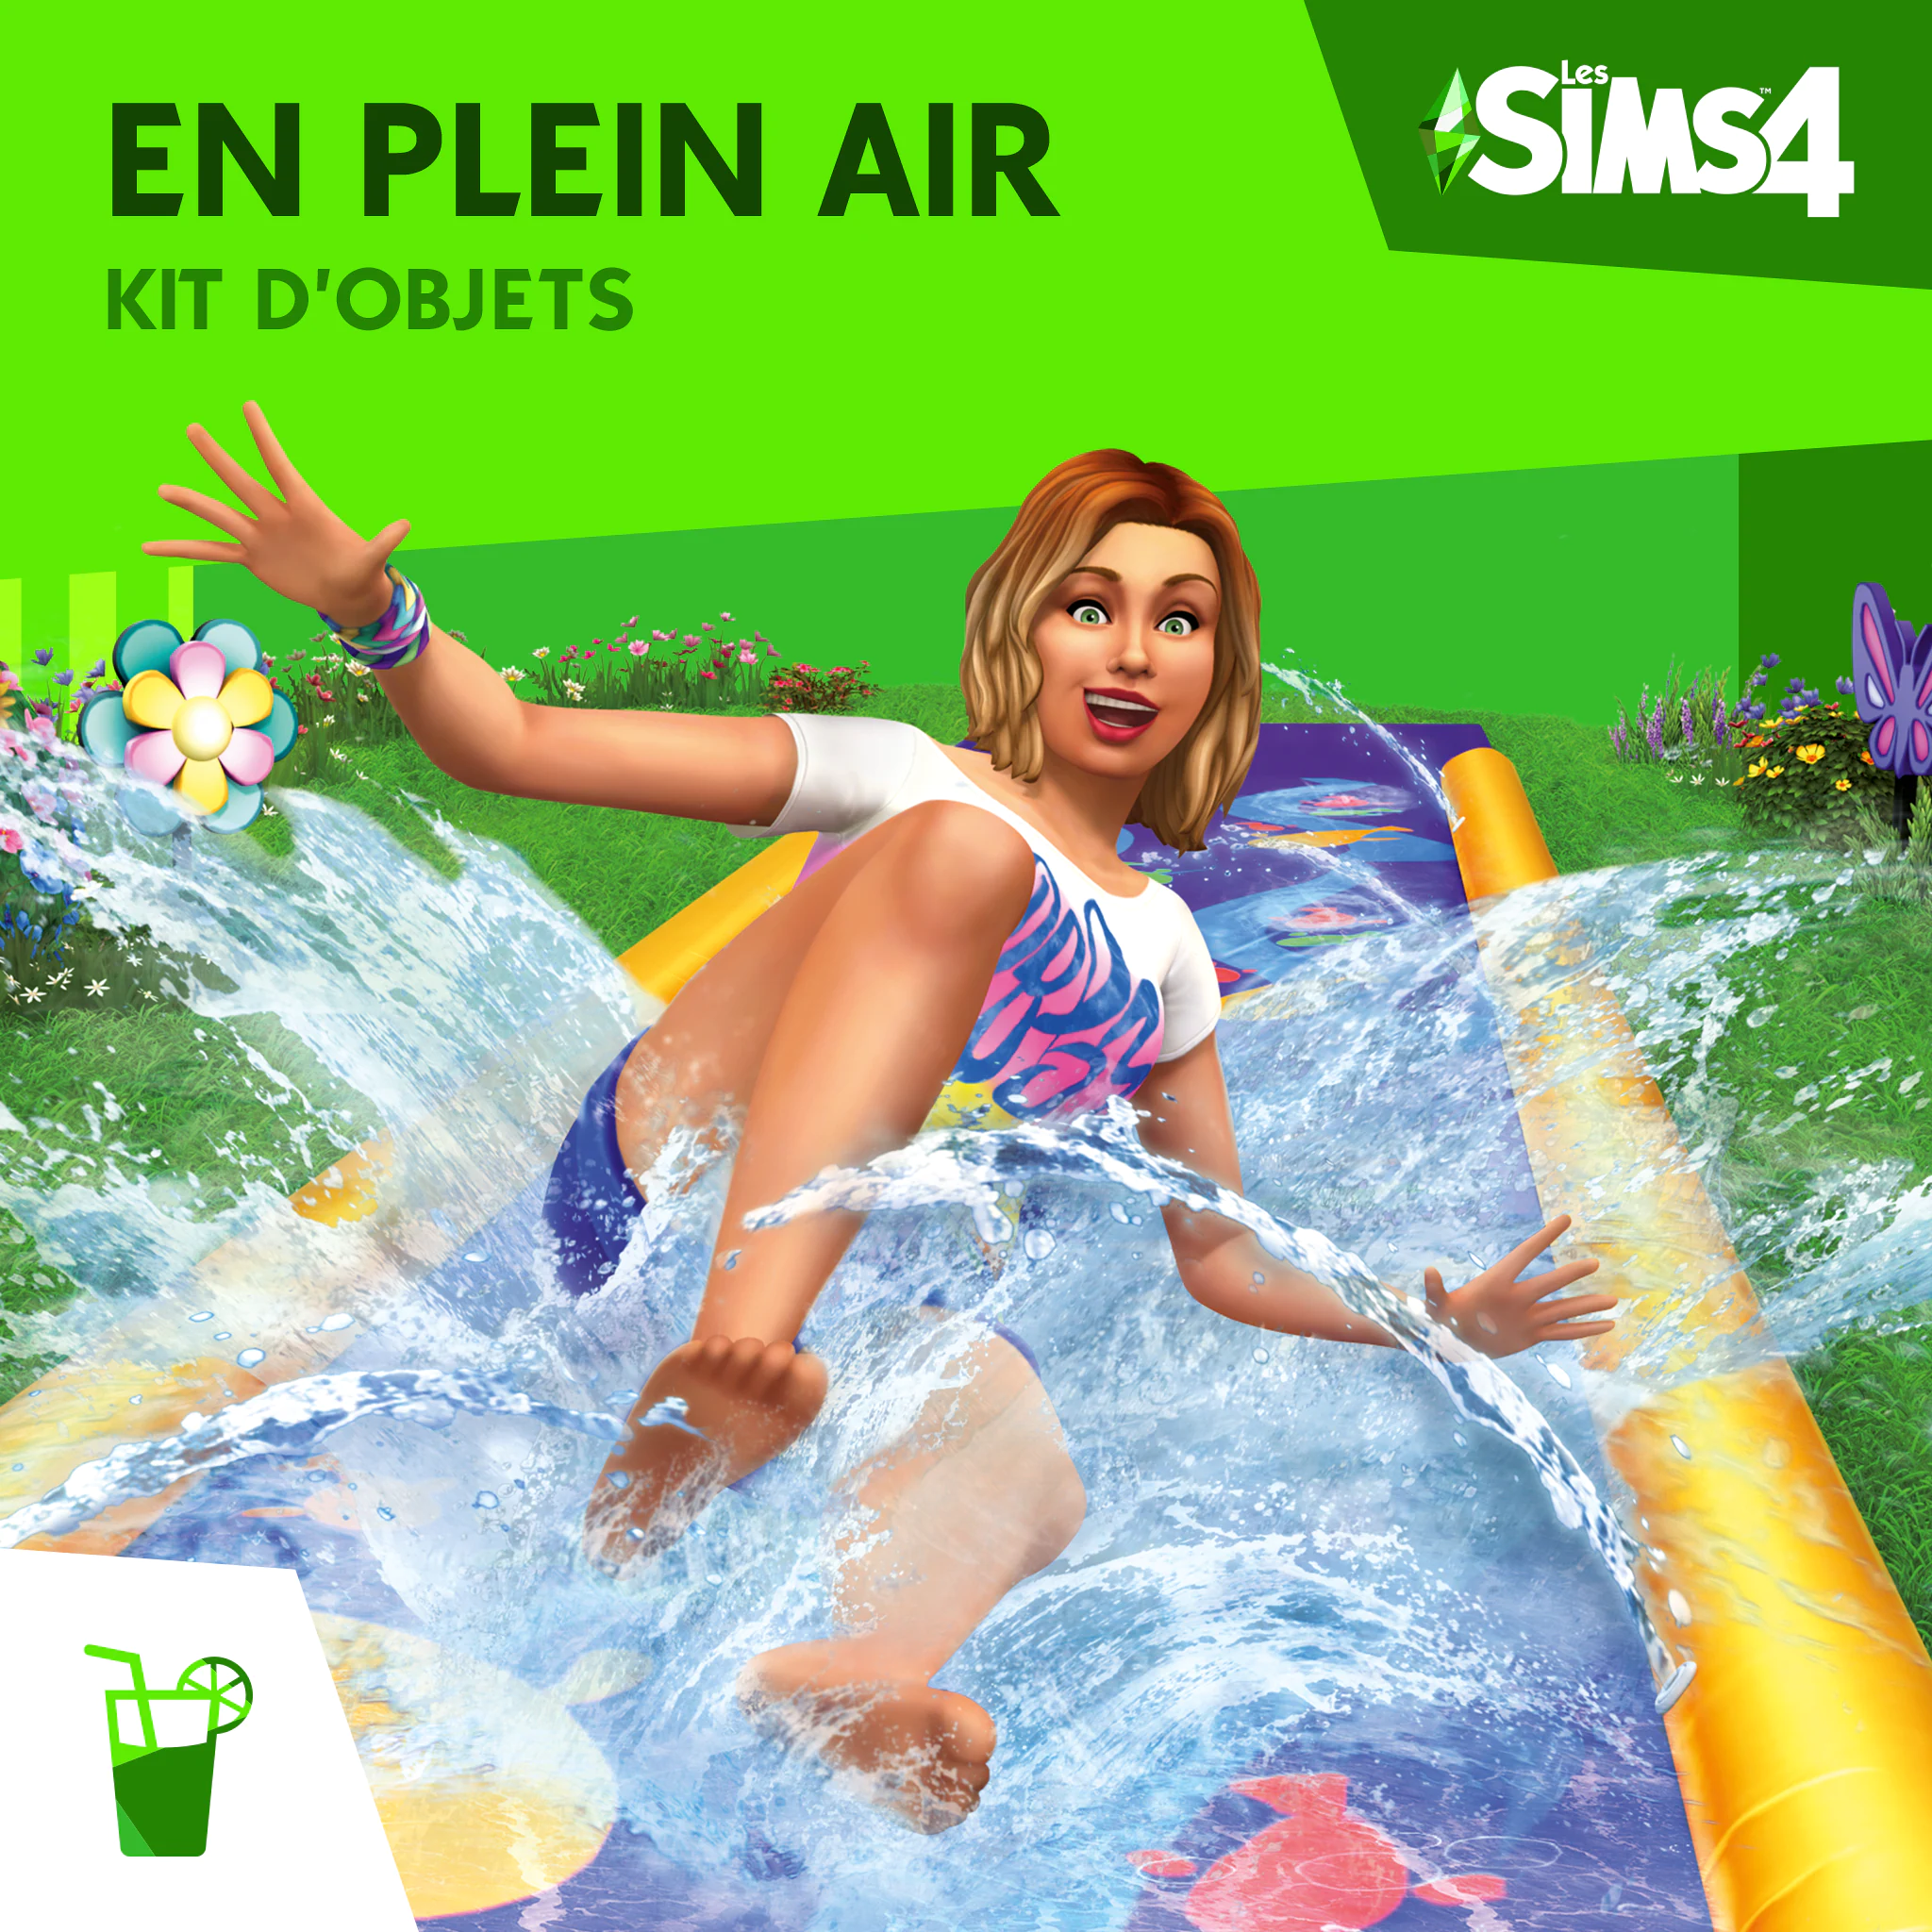 Les Sims 4 - Kit d'Objets en Plein Air (DLC)